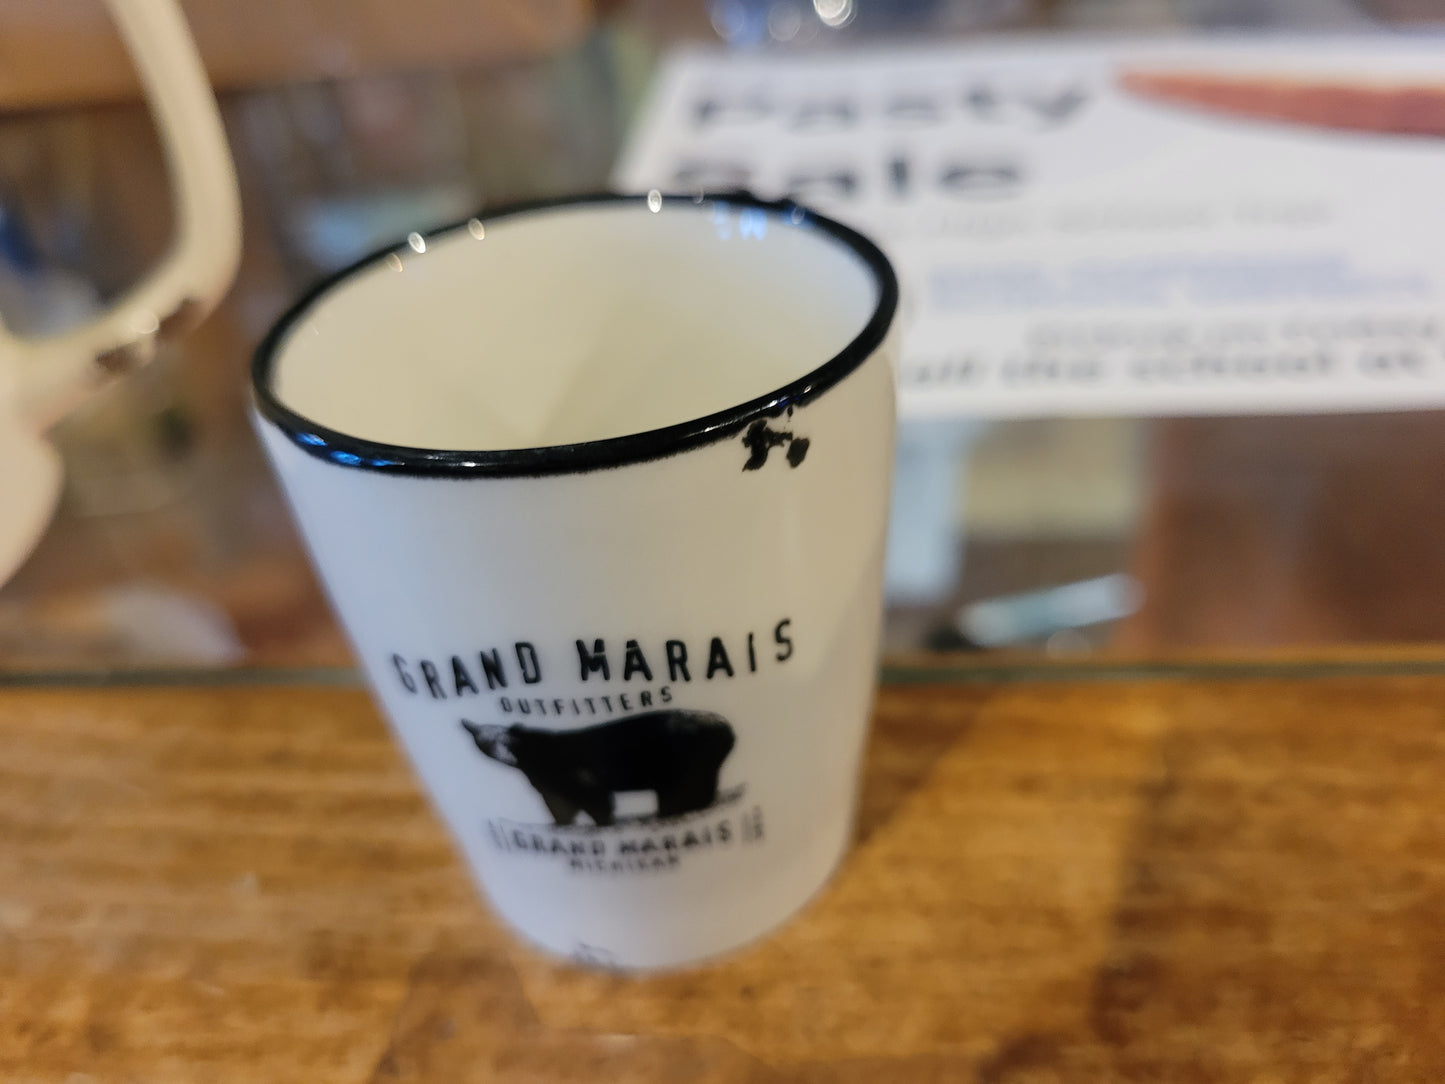 Ceramic shot glass with Grand Marais Bear